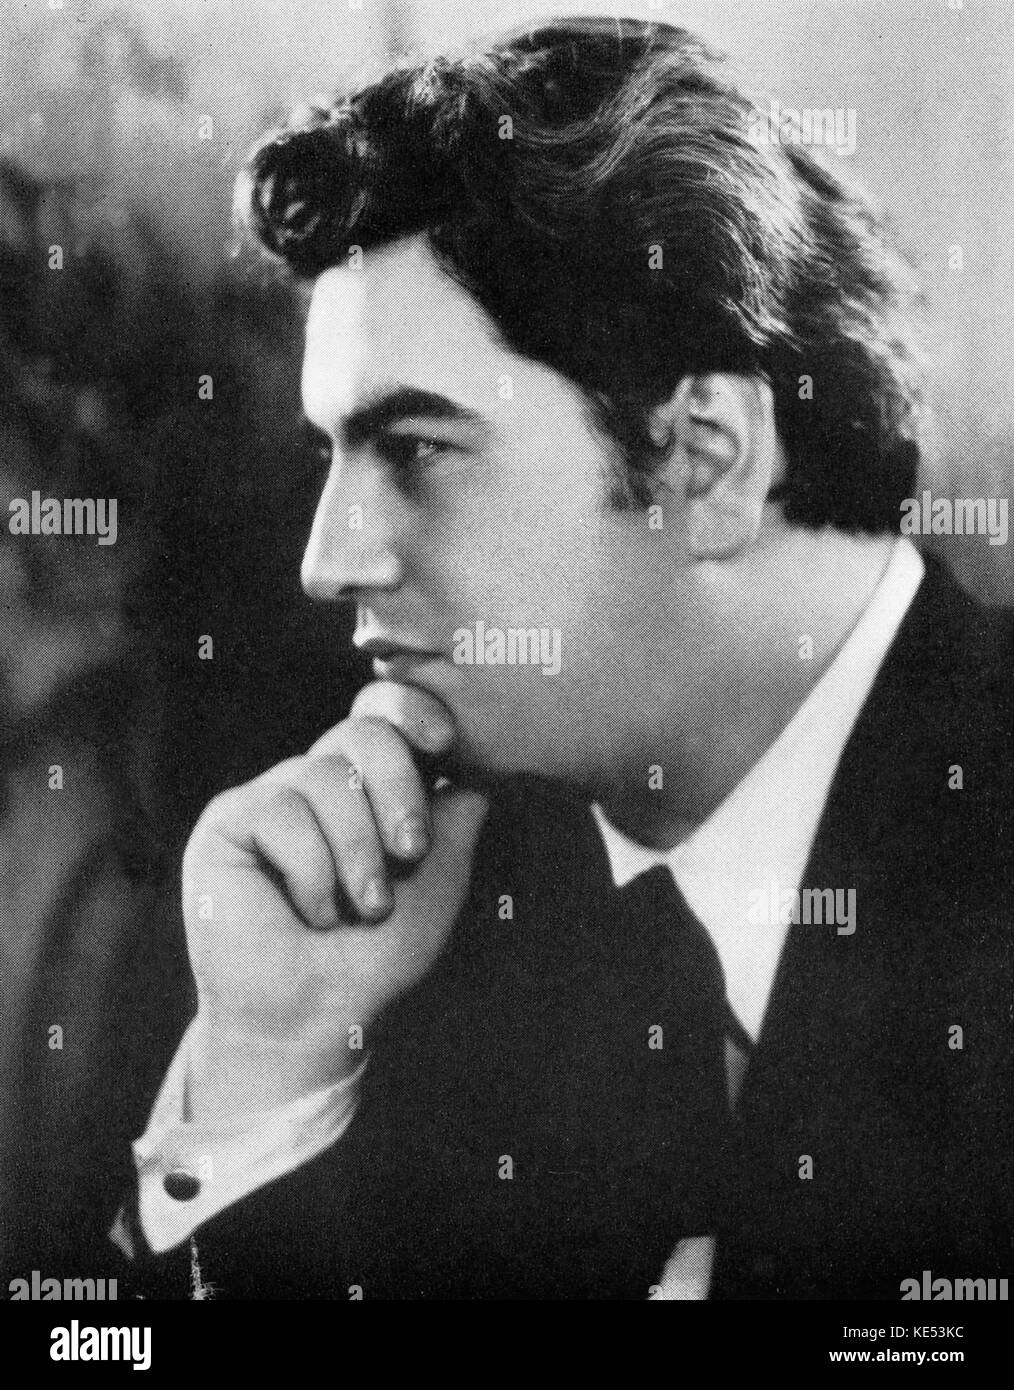 Vittorio Giannini retrato. Compositor estadounidense. El 19 de octubre de 1903 - 28 de noviembre de 1966. Foto de stock